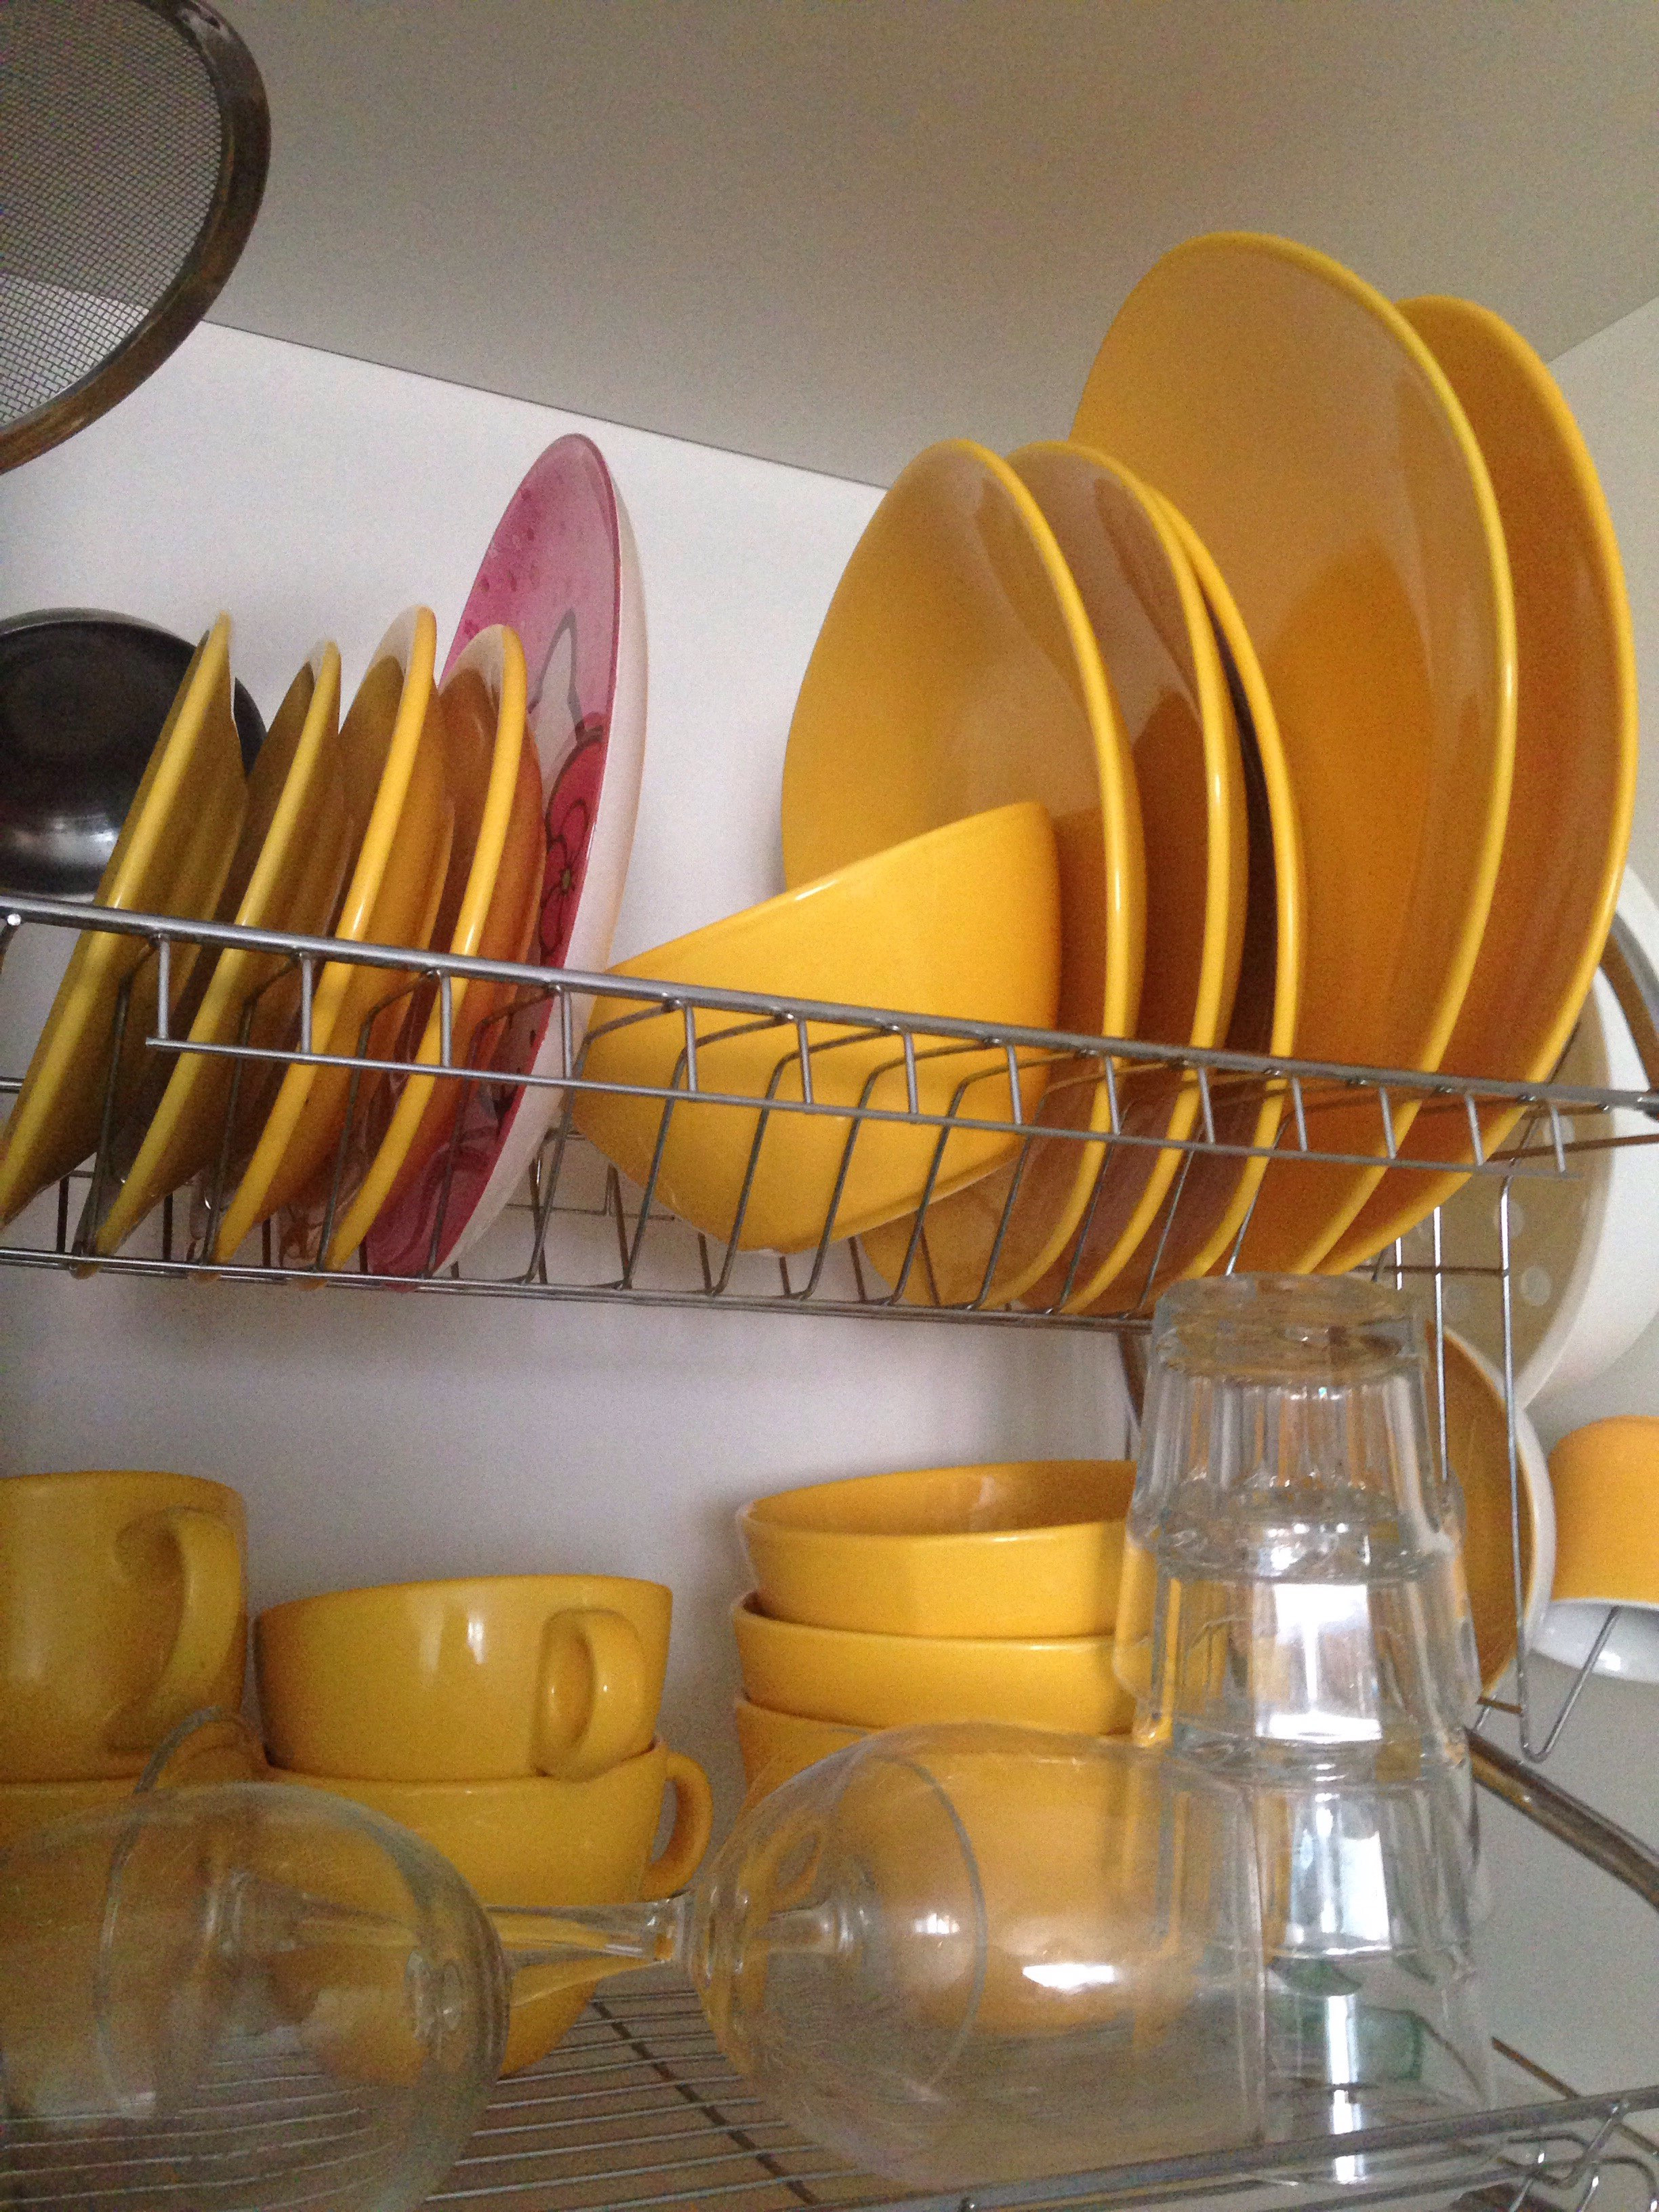 Дом посуды Красноярск Дудинская. Посуда для дома. Яркая посуда. Посуда в супермаркете.